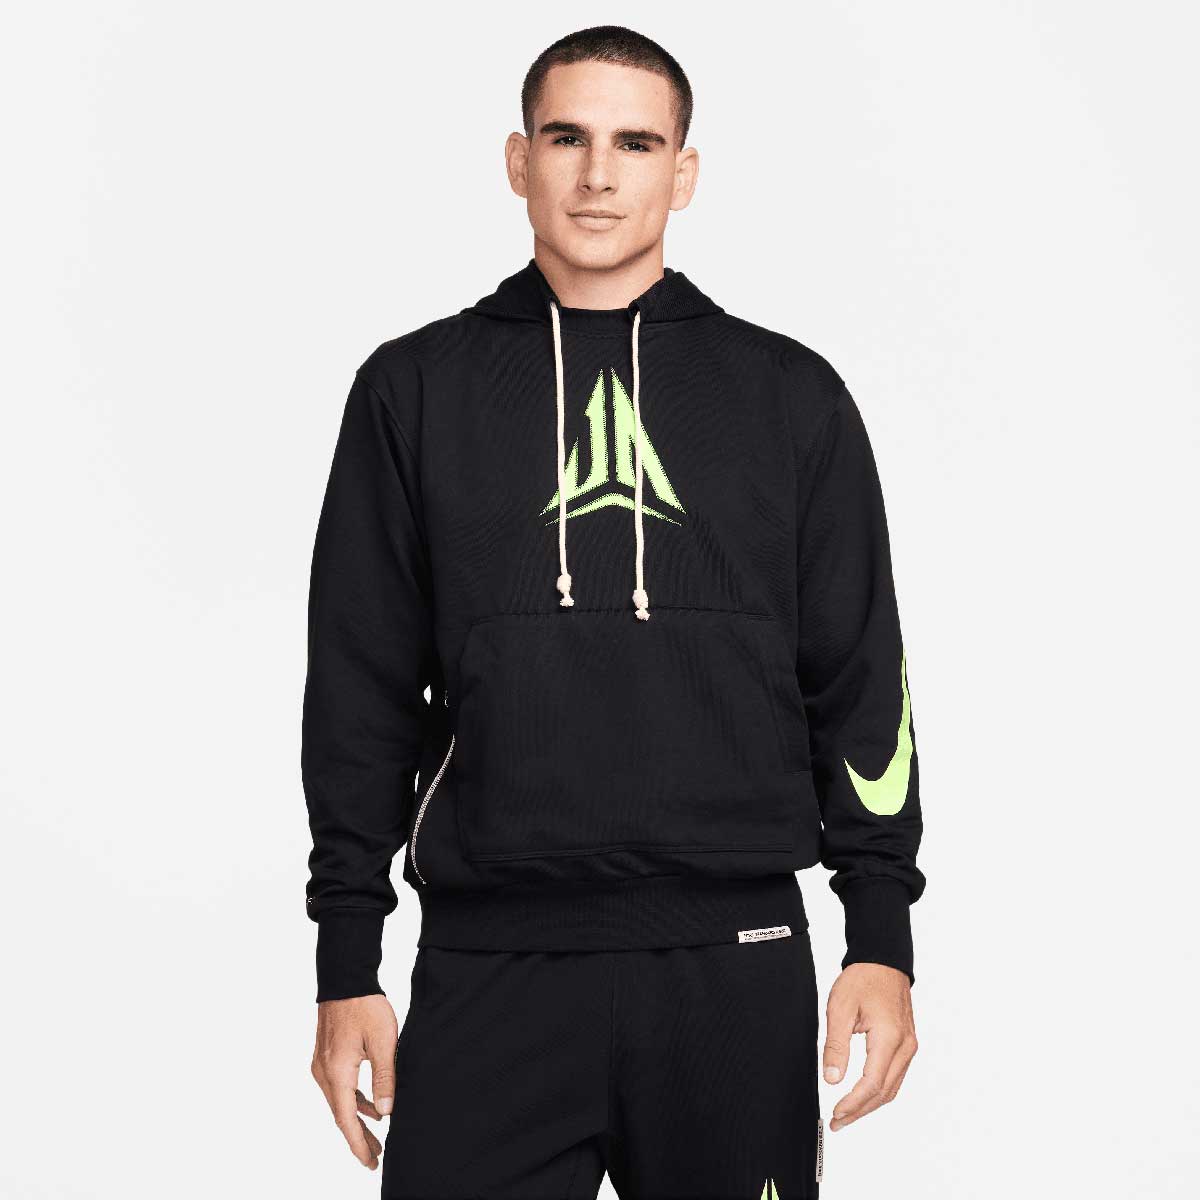 Image of Nike Ja Morant Dri-fit Standard Issue Hoody, Black//